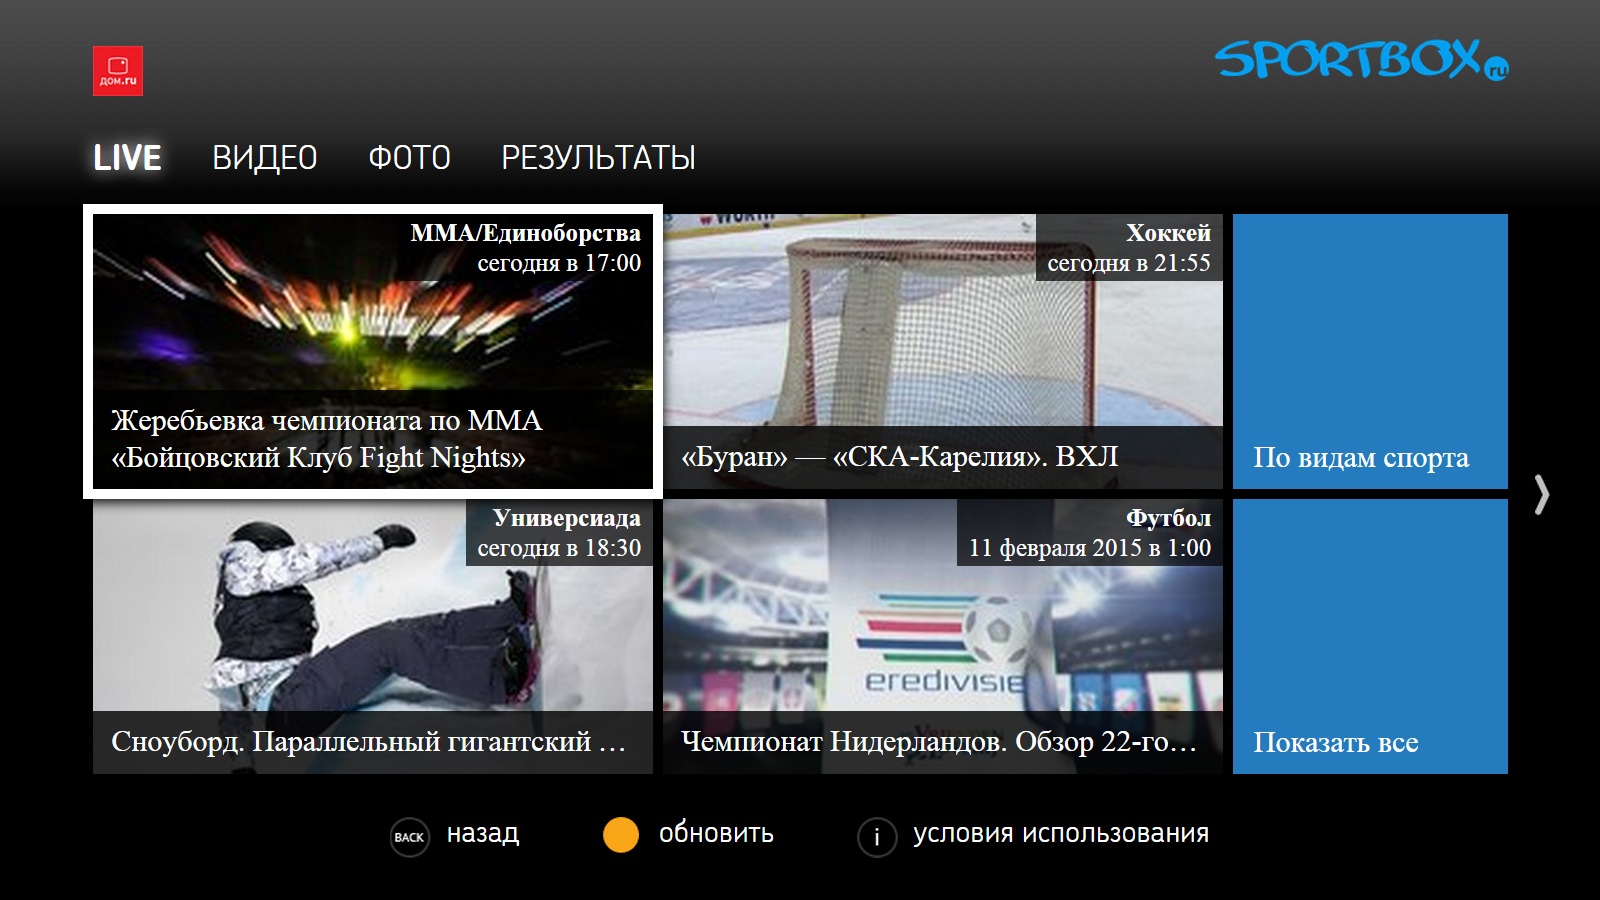 Https news sportbox ru результаты спорта. Спортбокс. Спортбокс ру прямые трансляции. Спортбокс новости.